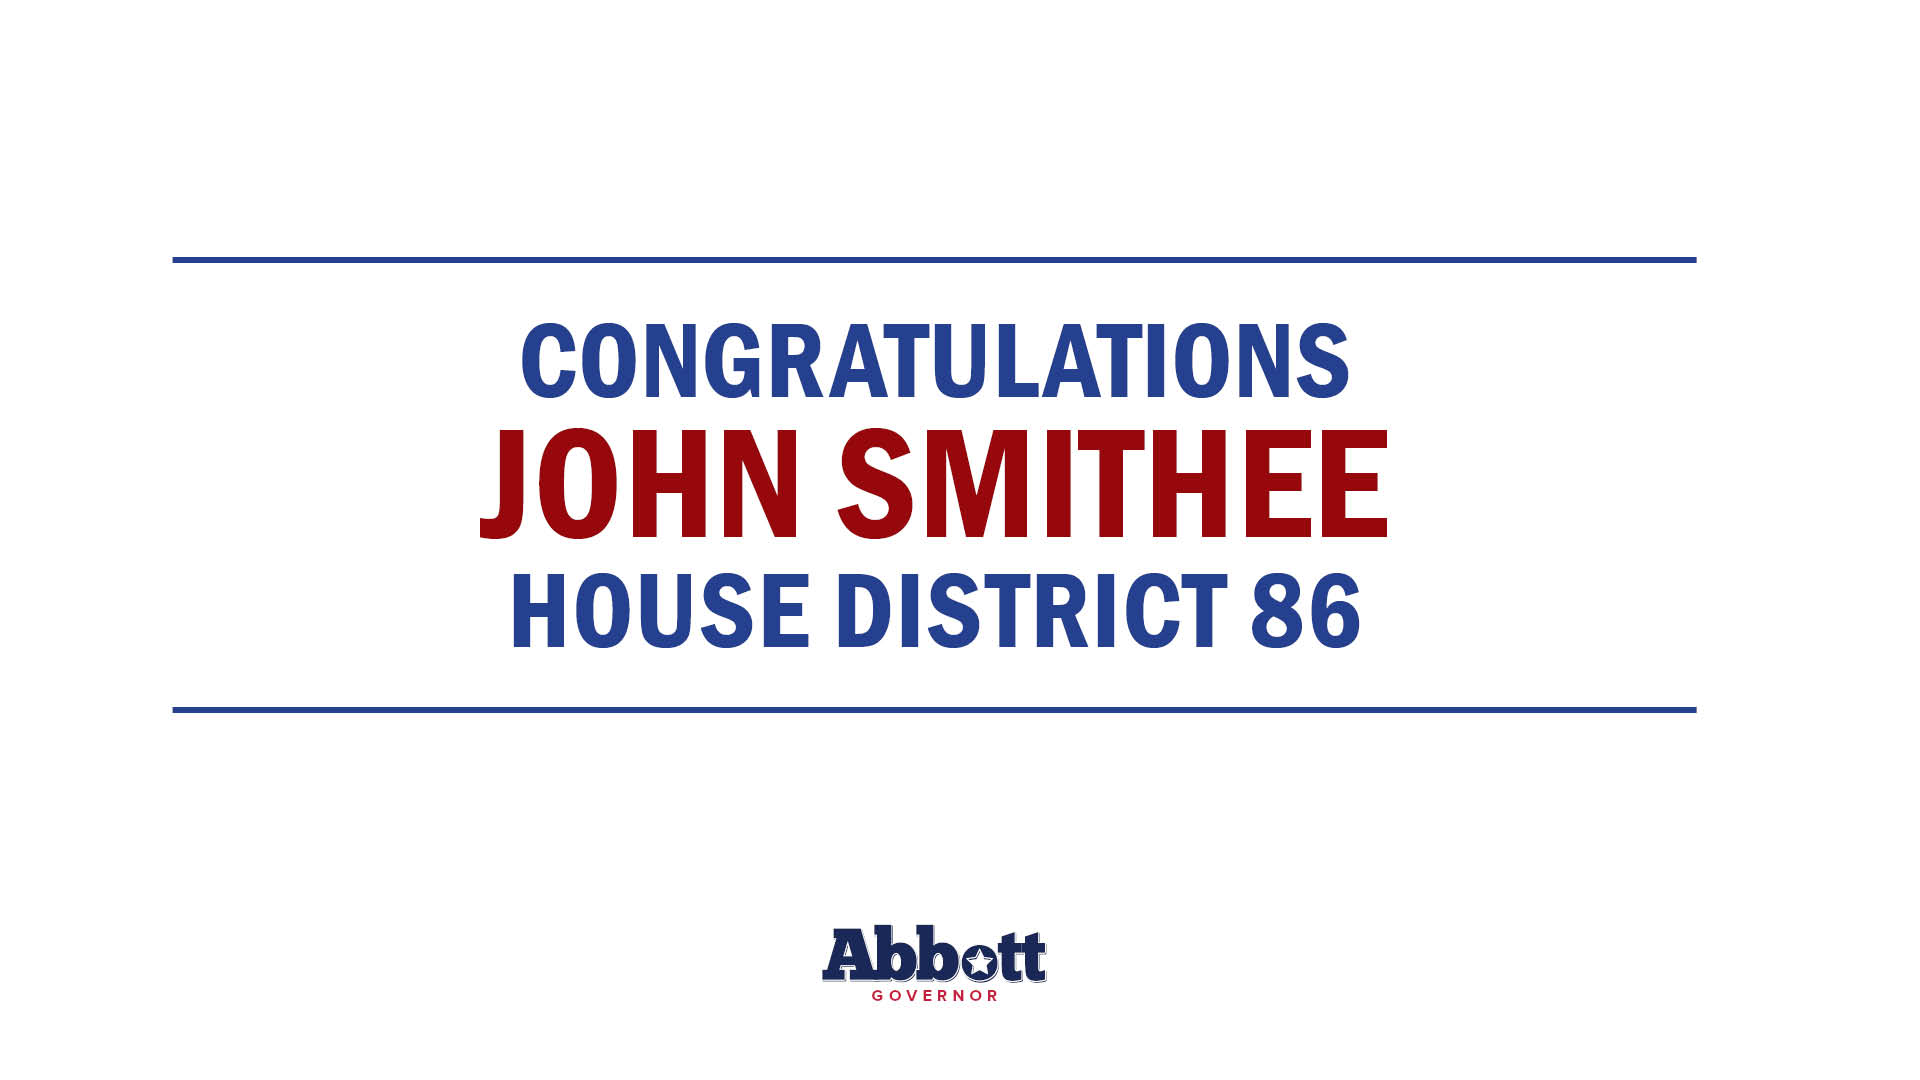 Governor Abbott Congratulates Representative John Smithee Following Re-Election Win